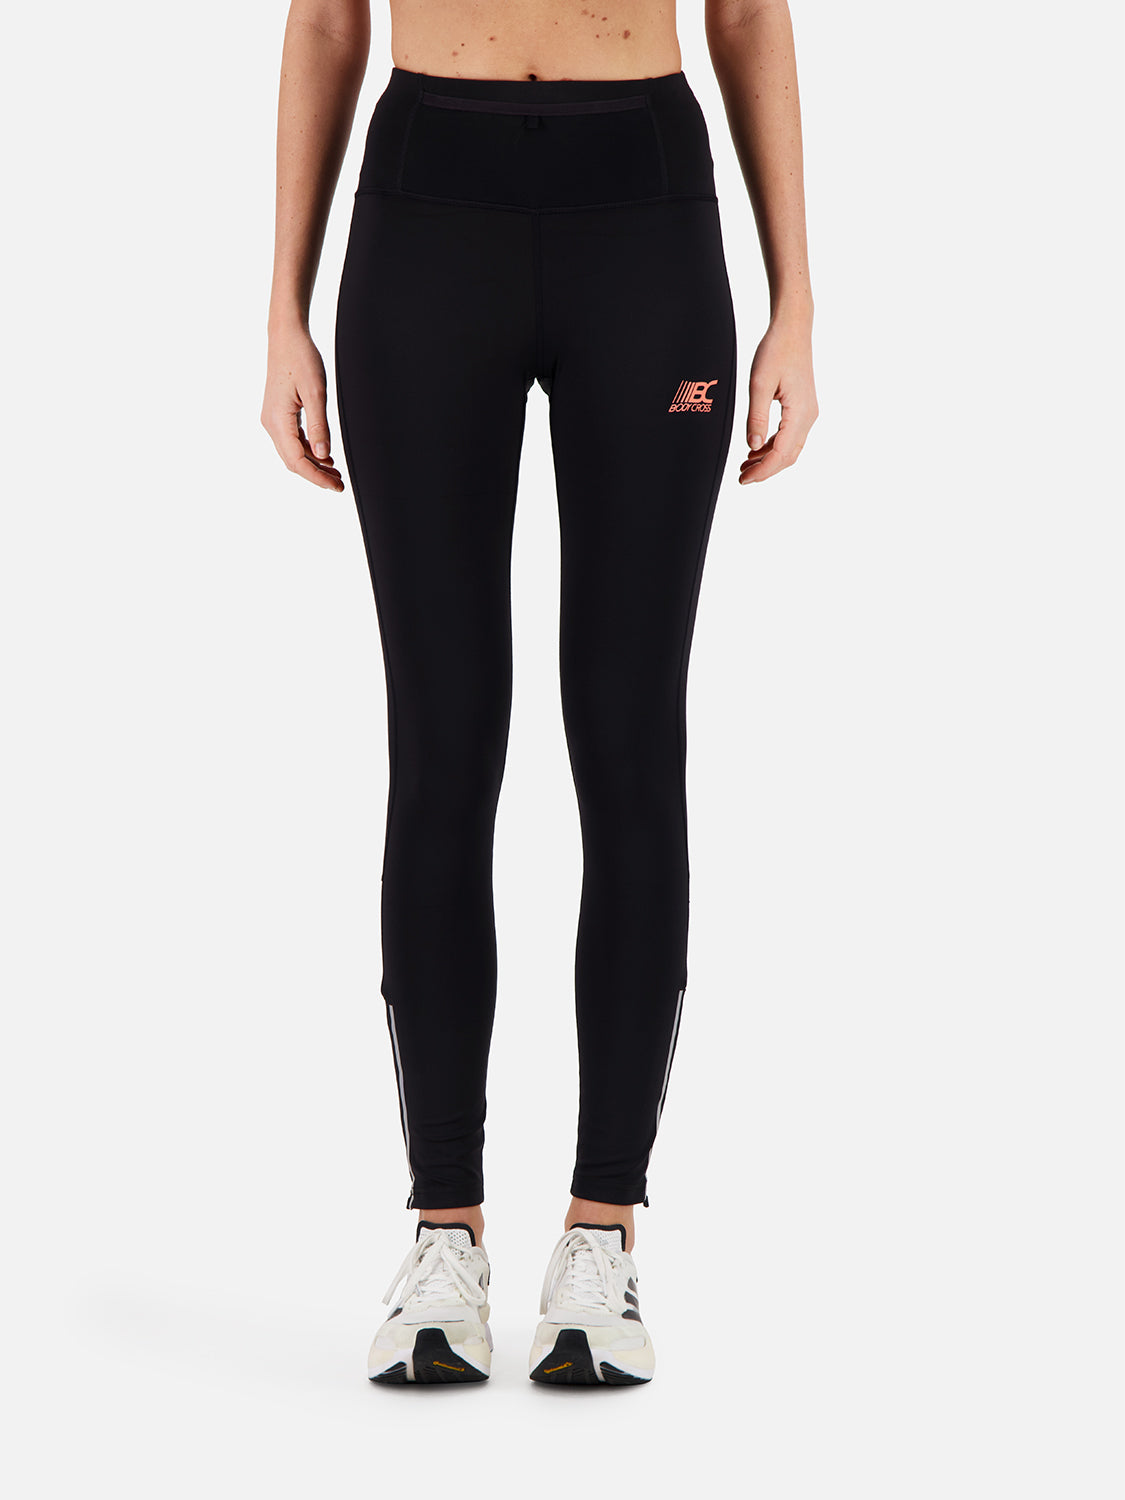 Aelis women's running leggings Black – Bodycross